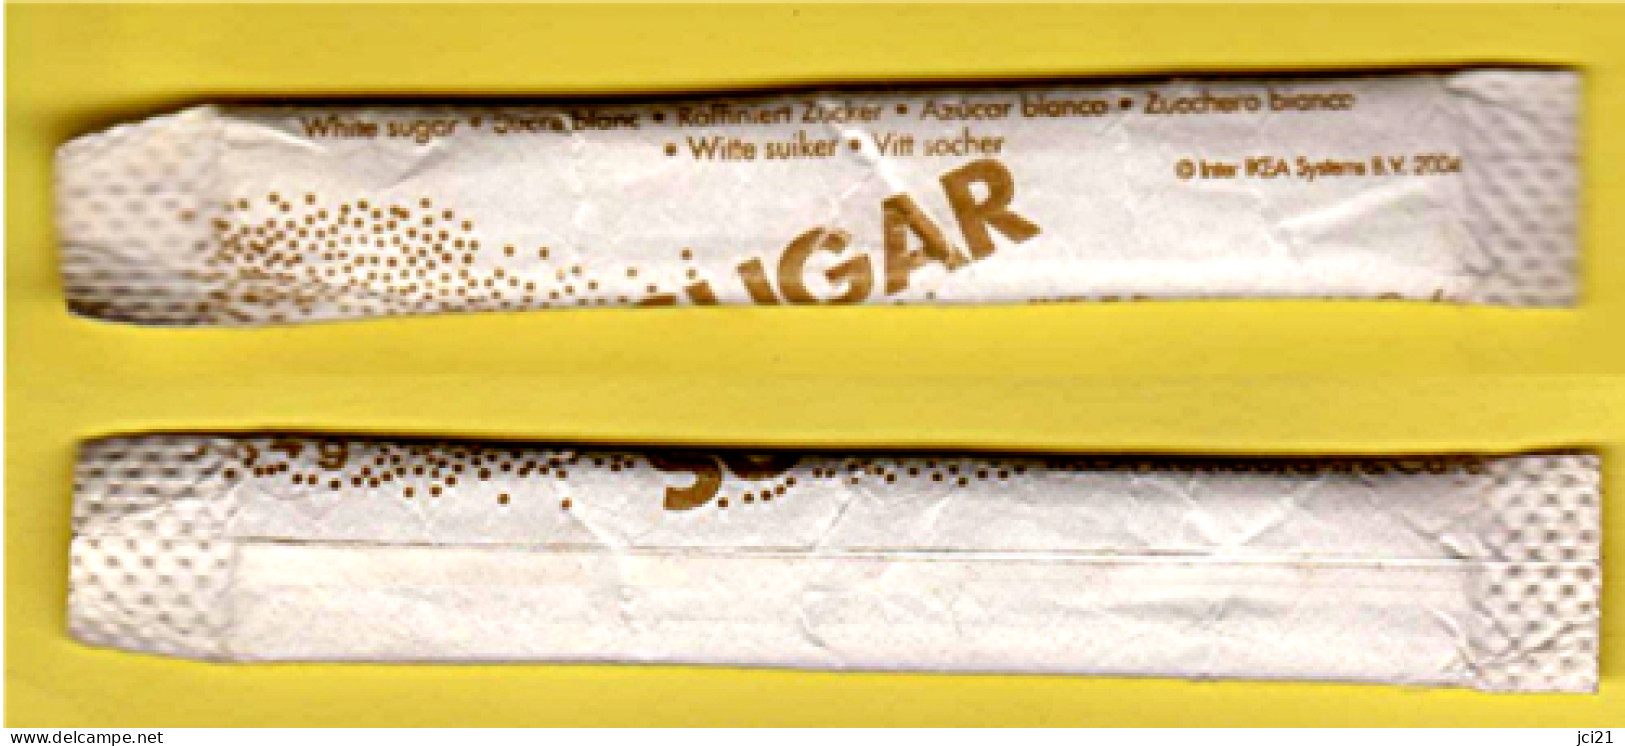 Stick De Sucre " SUGAR - IKEA " [S021]_D352 - Sucres